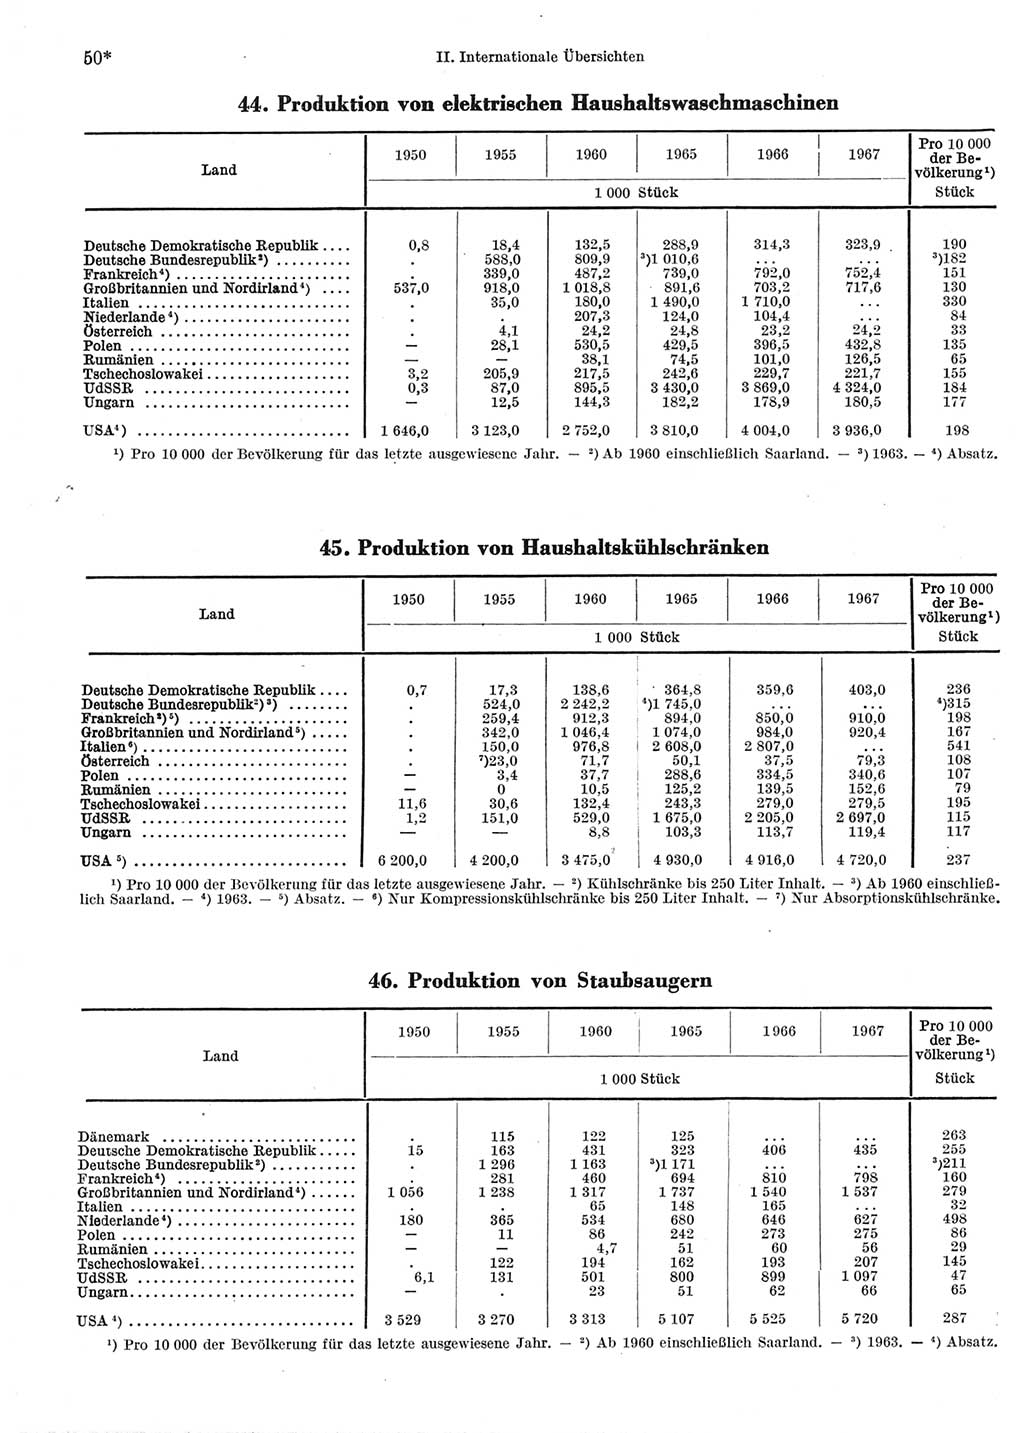 Statistisches Jahrbuch der Deutschen Demokratischen Republik (DDR) 1969, Seite 50 (Stat. Jb. DDR 1969, S. 50)